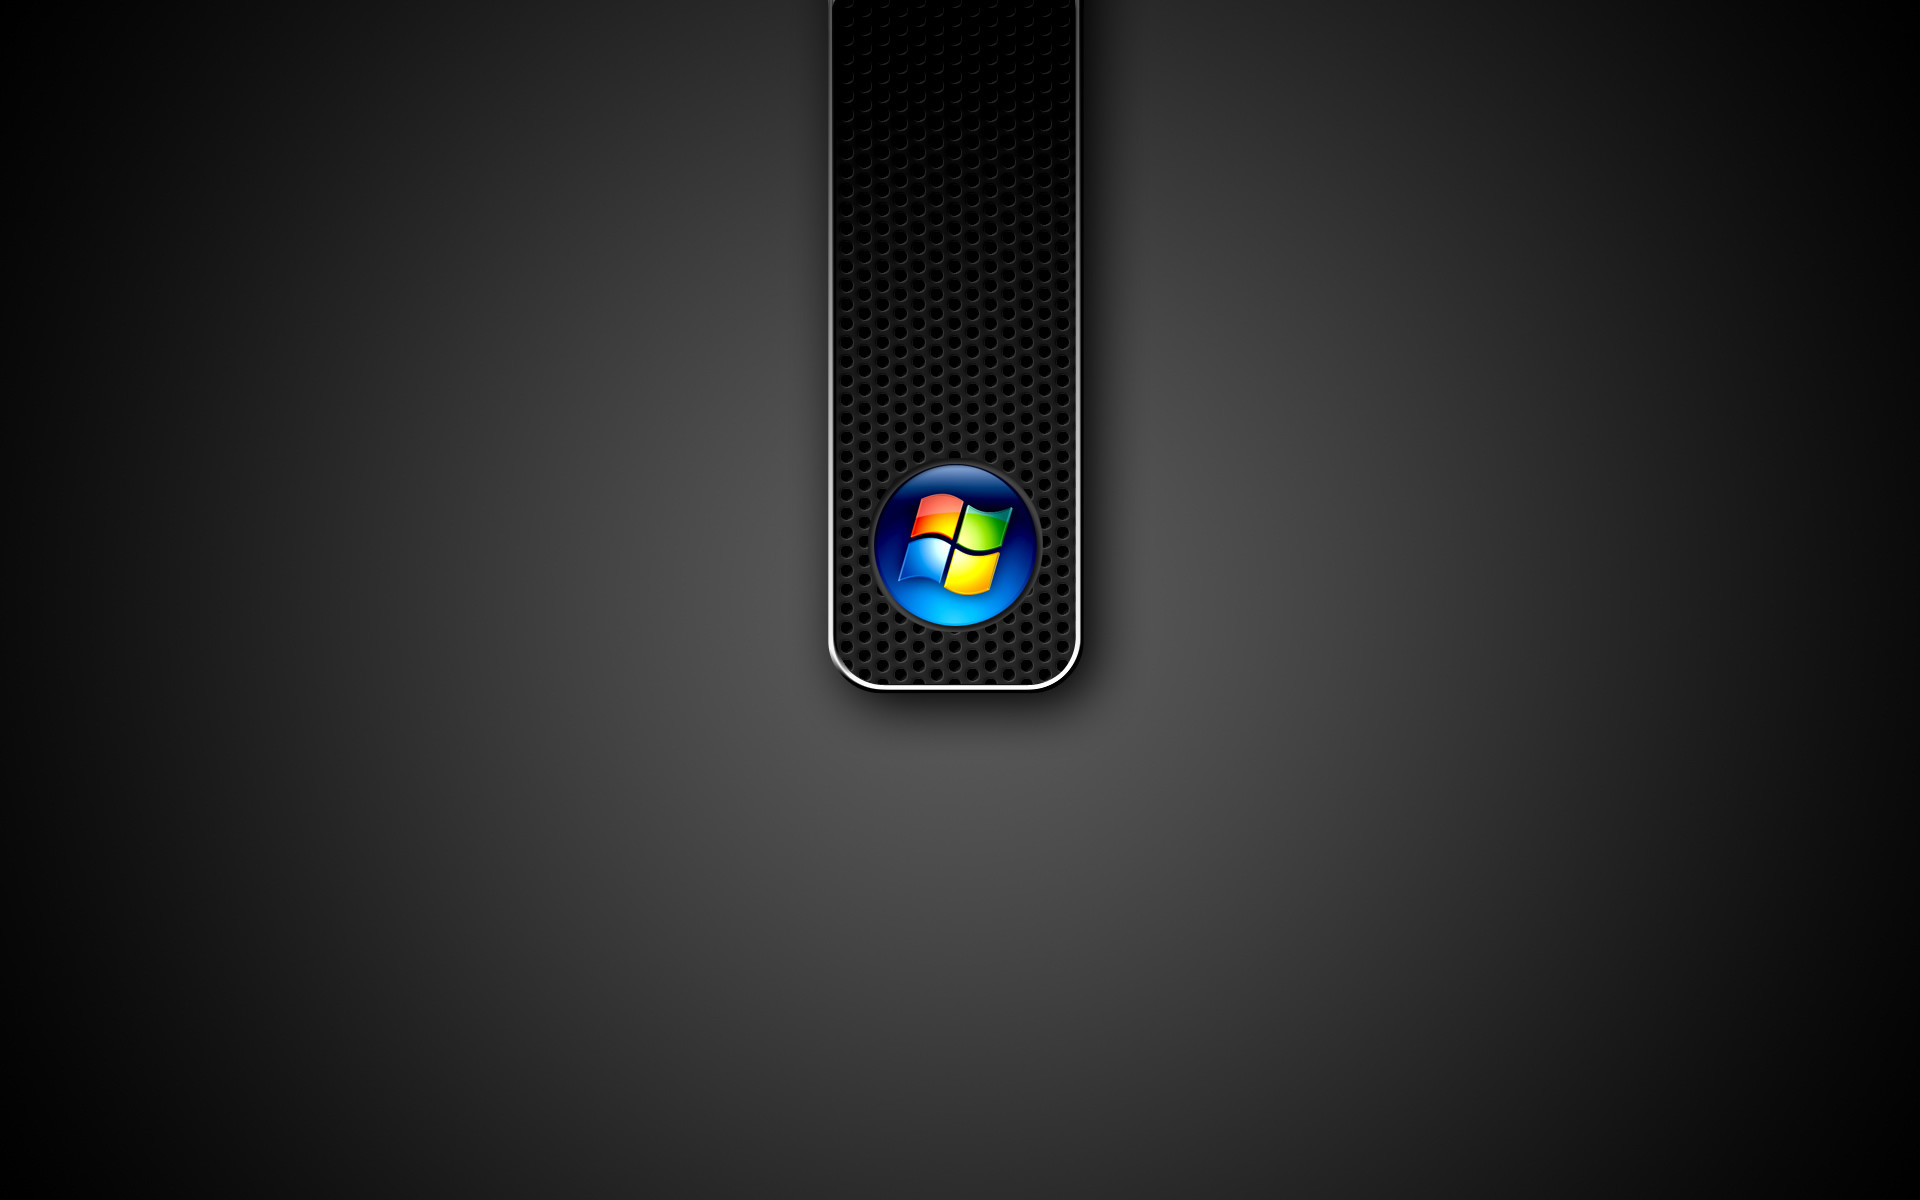 Windows Black Background Image